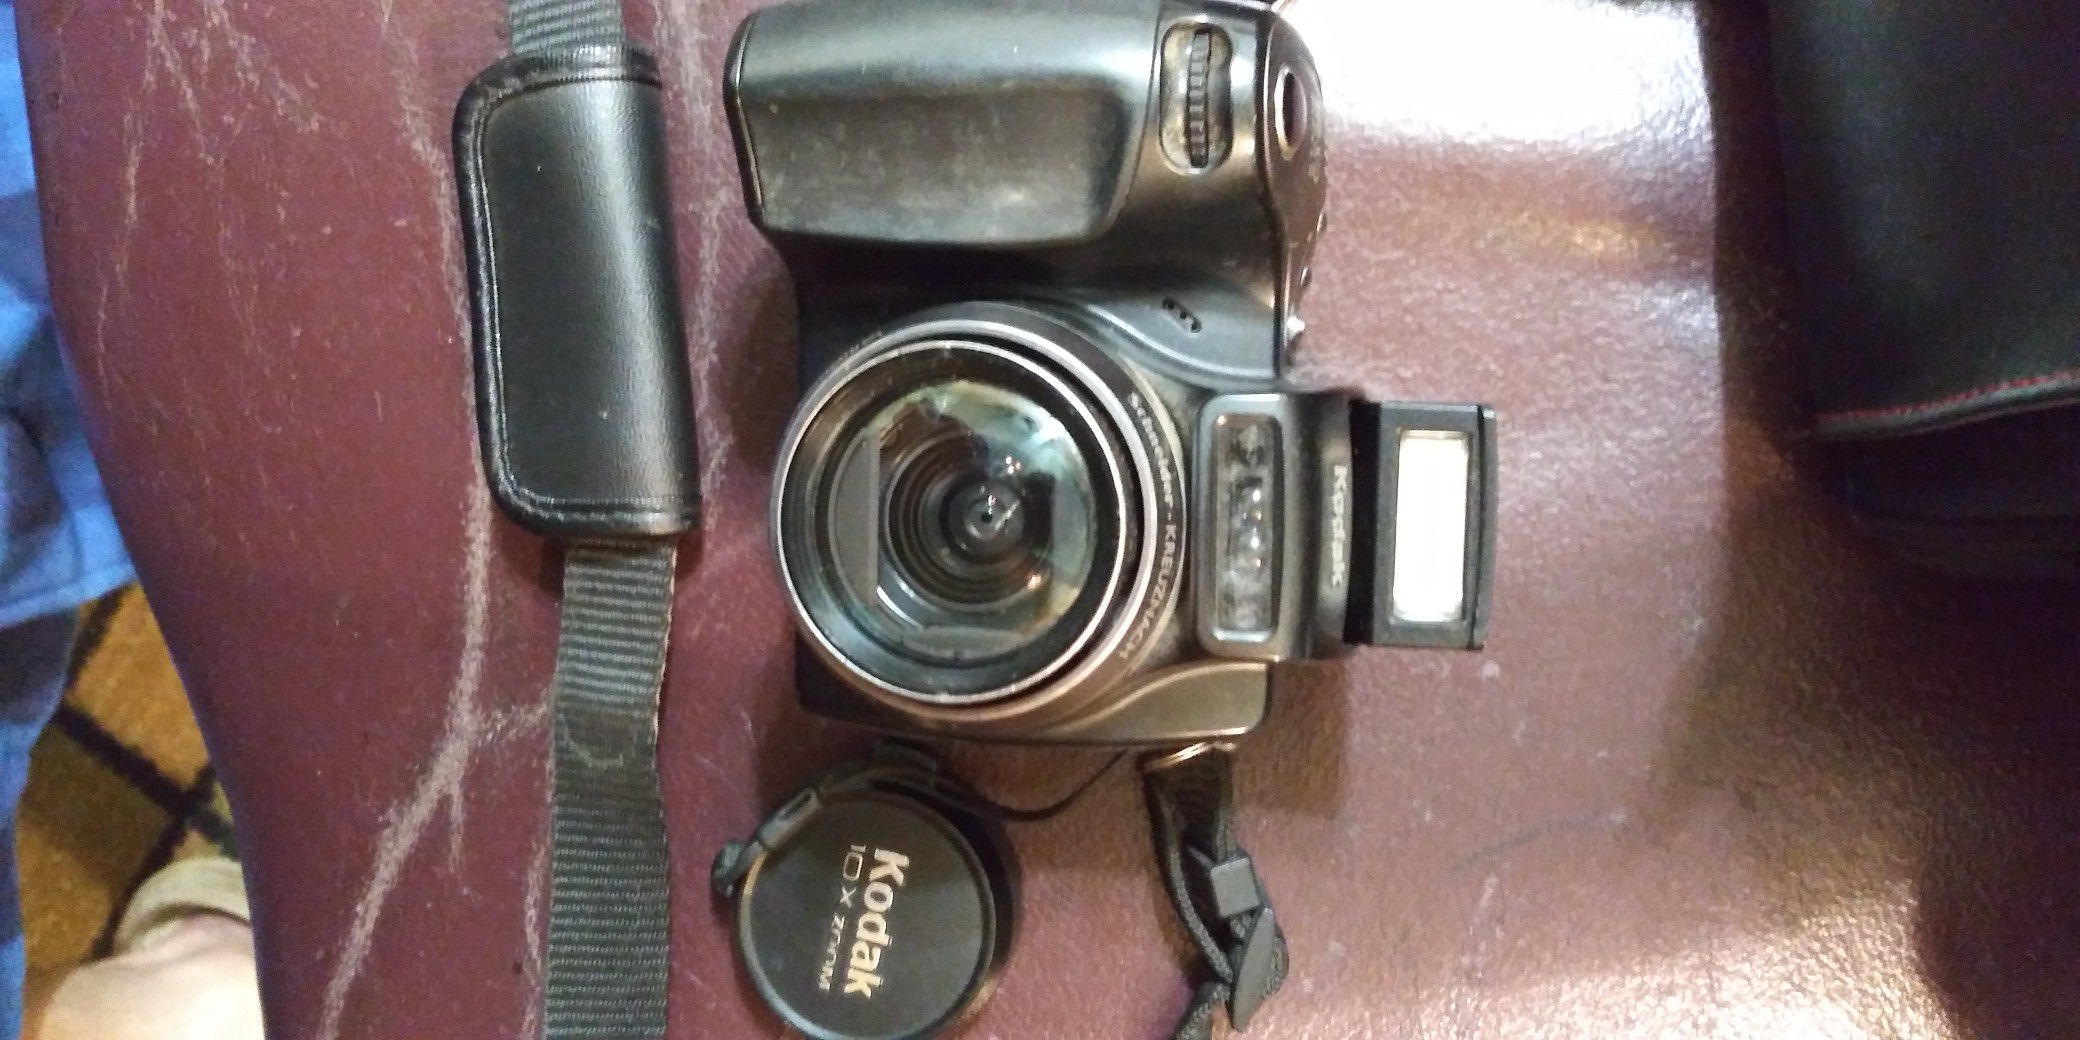 Kodak,"Easy Share" digital camera